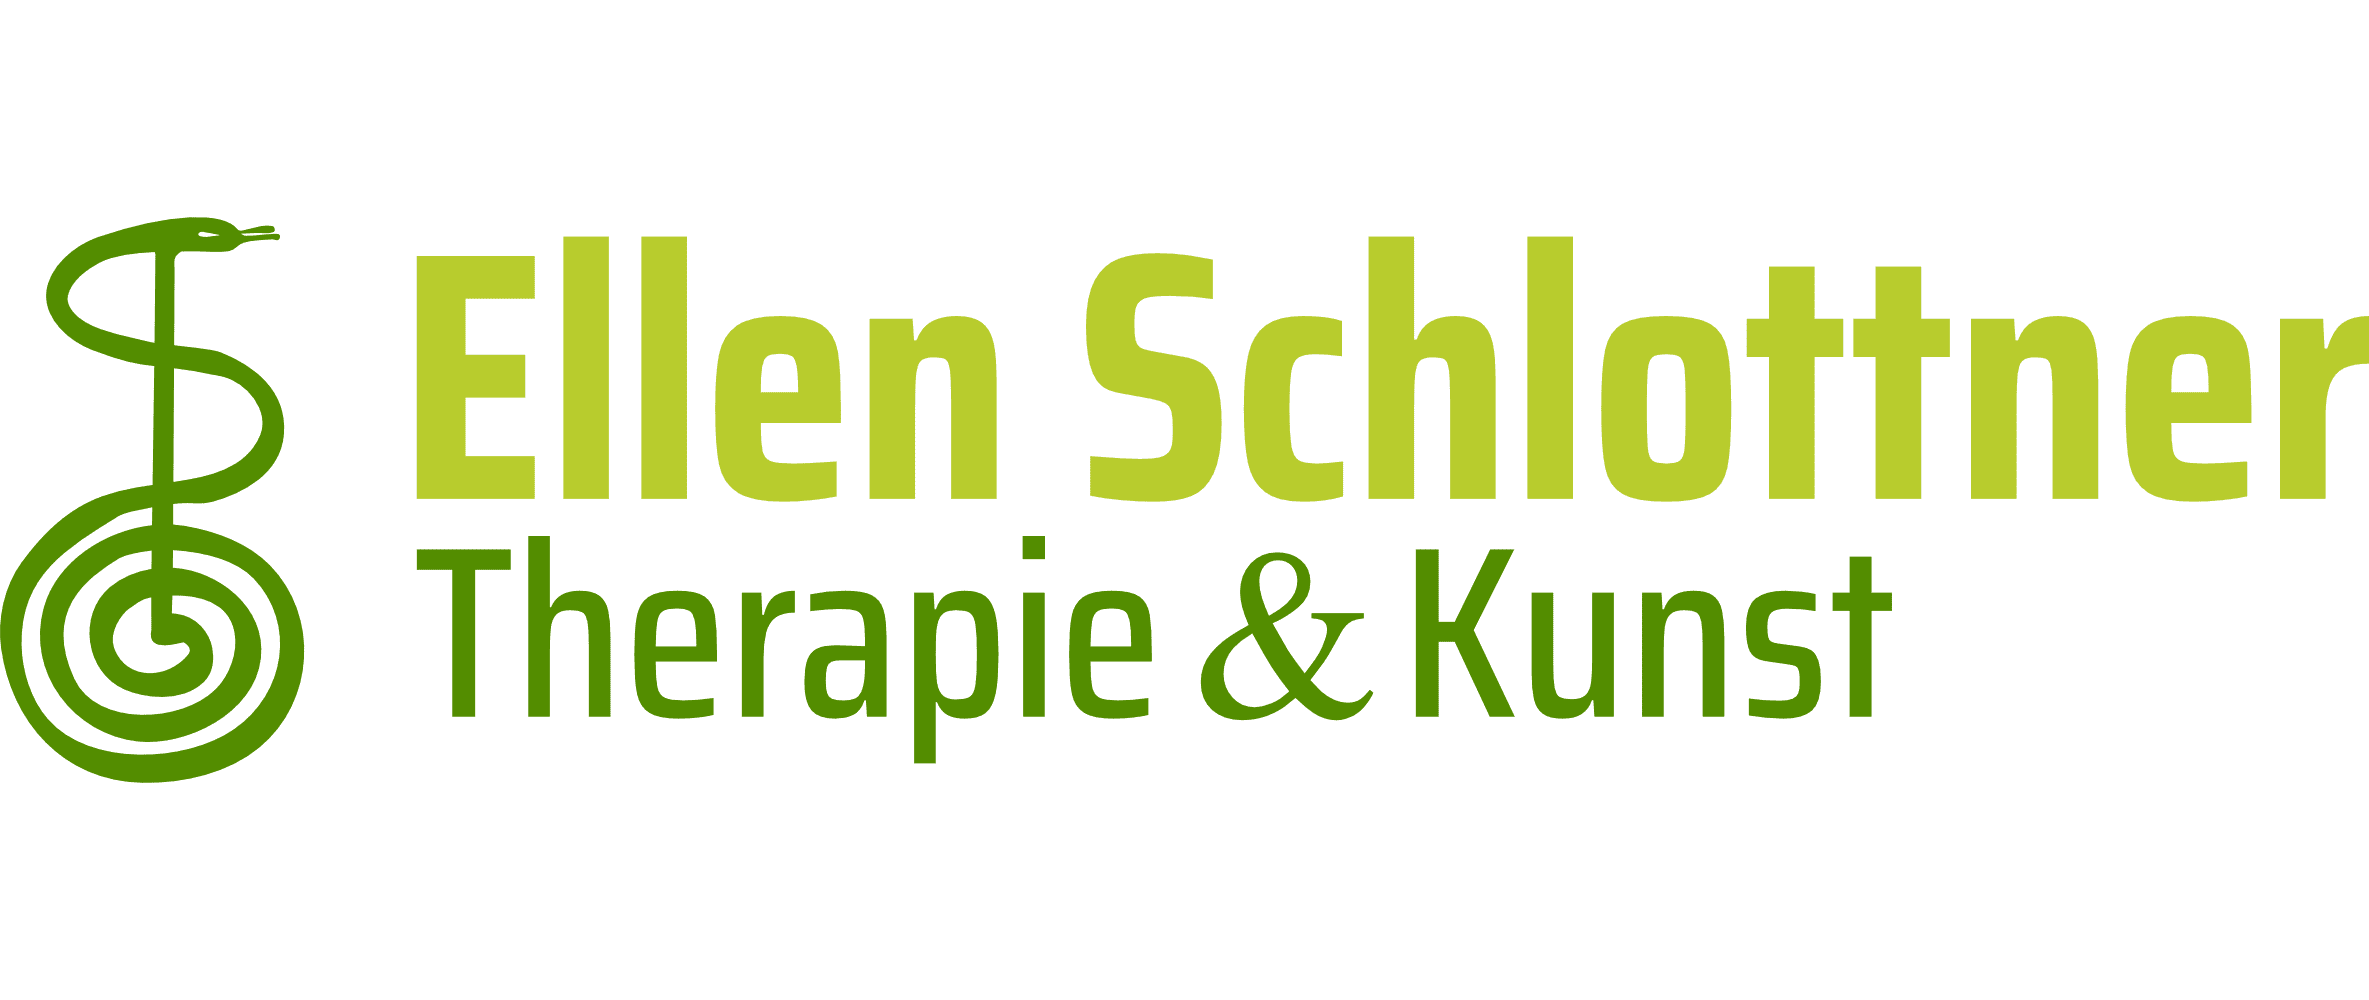 Ellen Schlottner – Therapie & Kunst